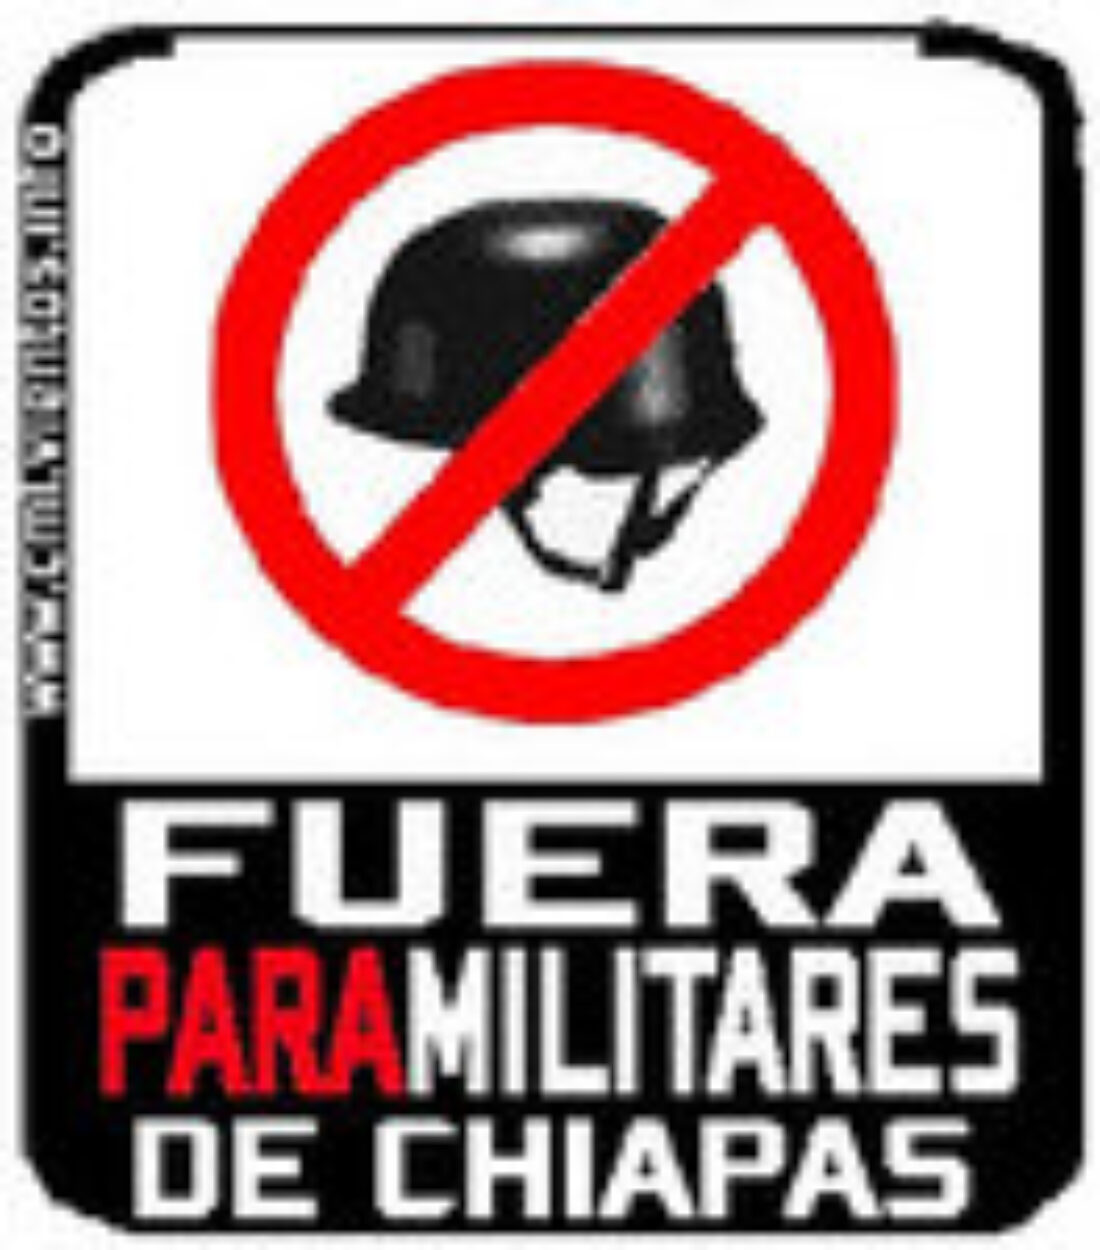 13 marzo, Madrid : Concentración Pza. Cibeles. «Paremos la guerra en Chiapas»